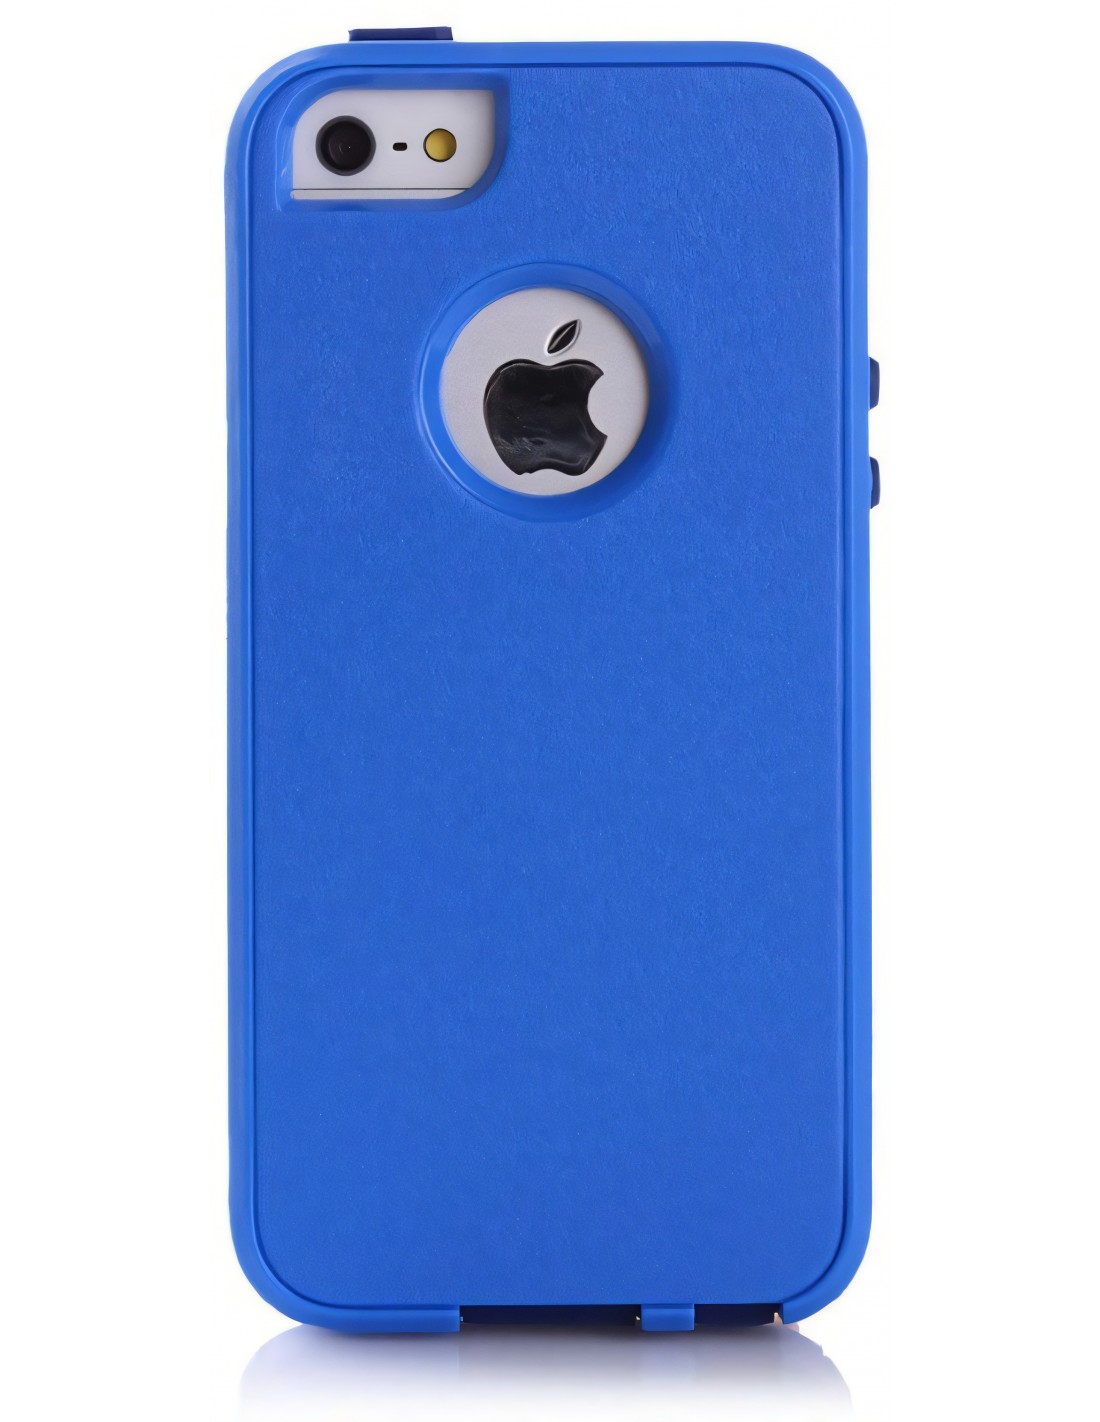 Coque Apple iPhone 5S et 5 Silicone Hybrid résistante Bleu foncé